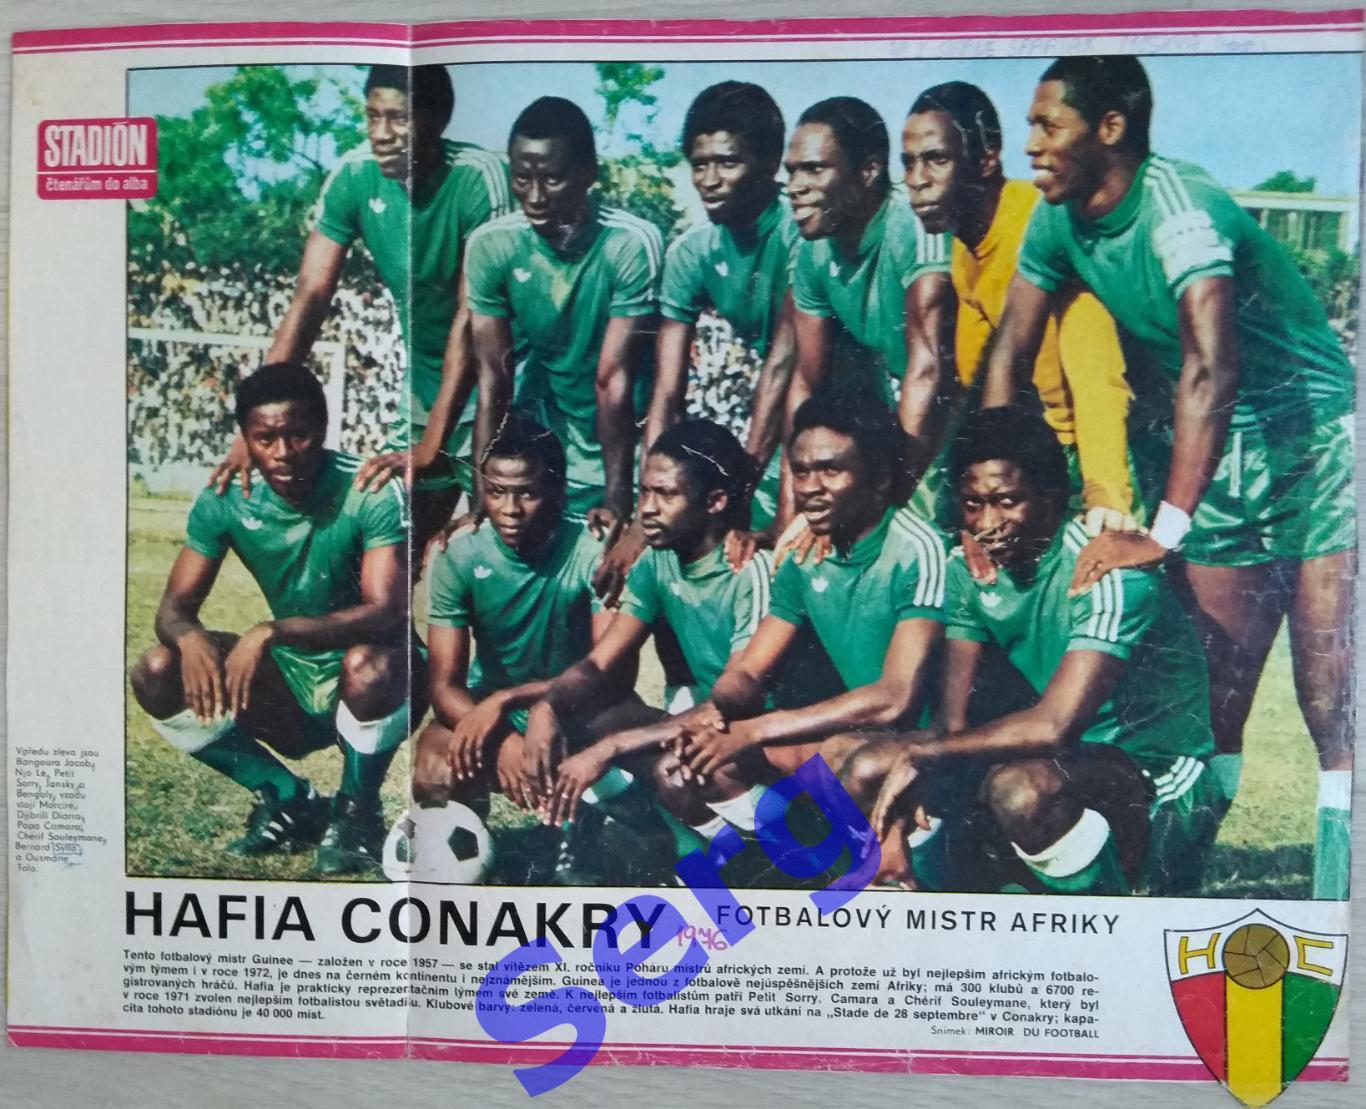 Постер Хафия Конакри, Гвинея из журнала Стадион (Stadion)